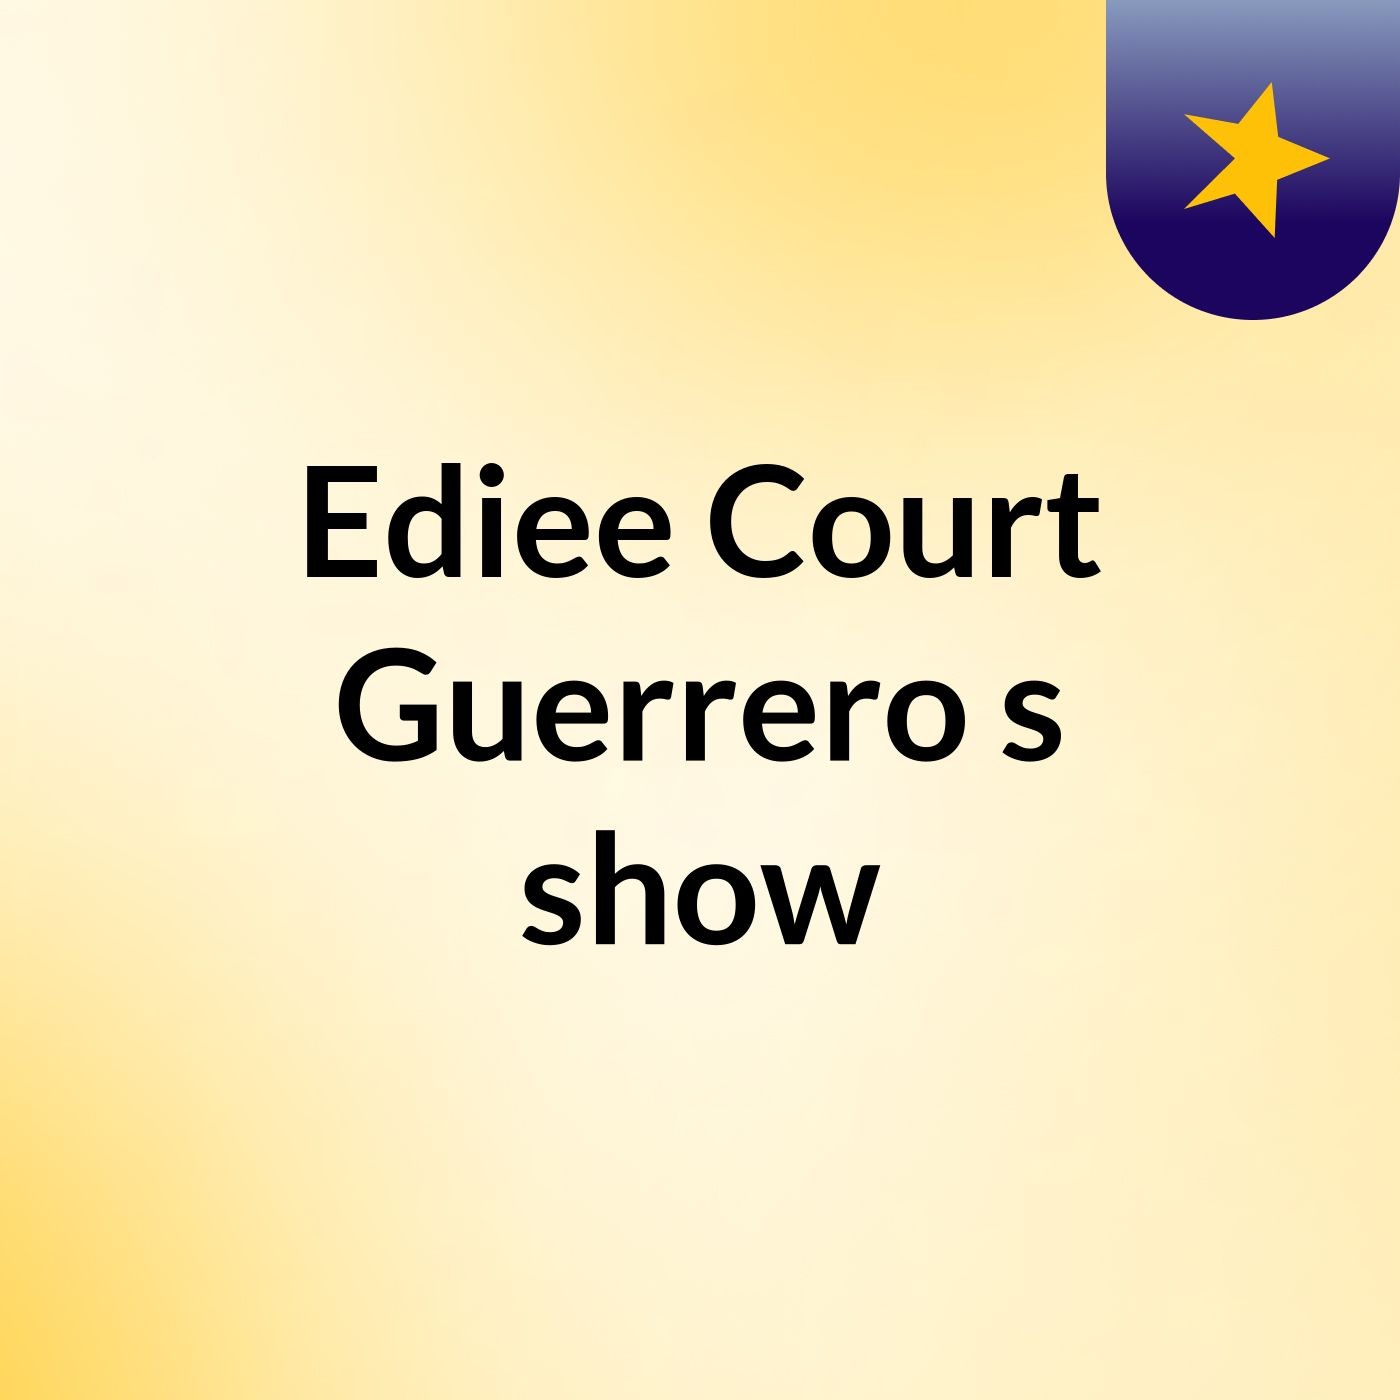 Ediee Court Guerrero's show